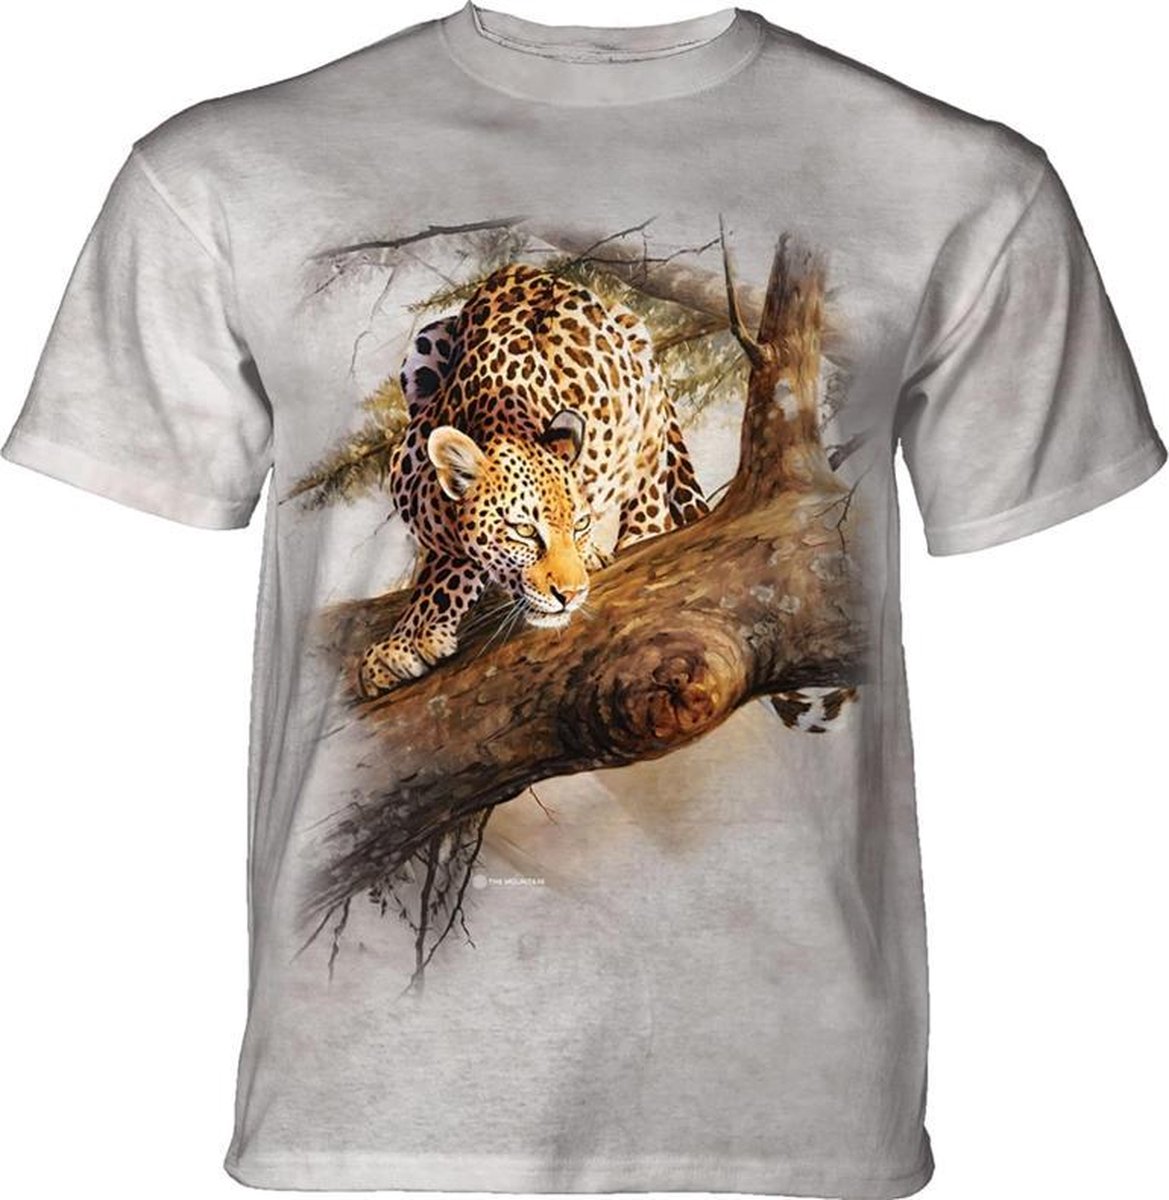 T-shirt Tree Demon Leopard M